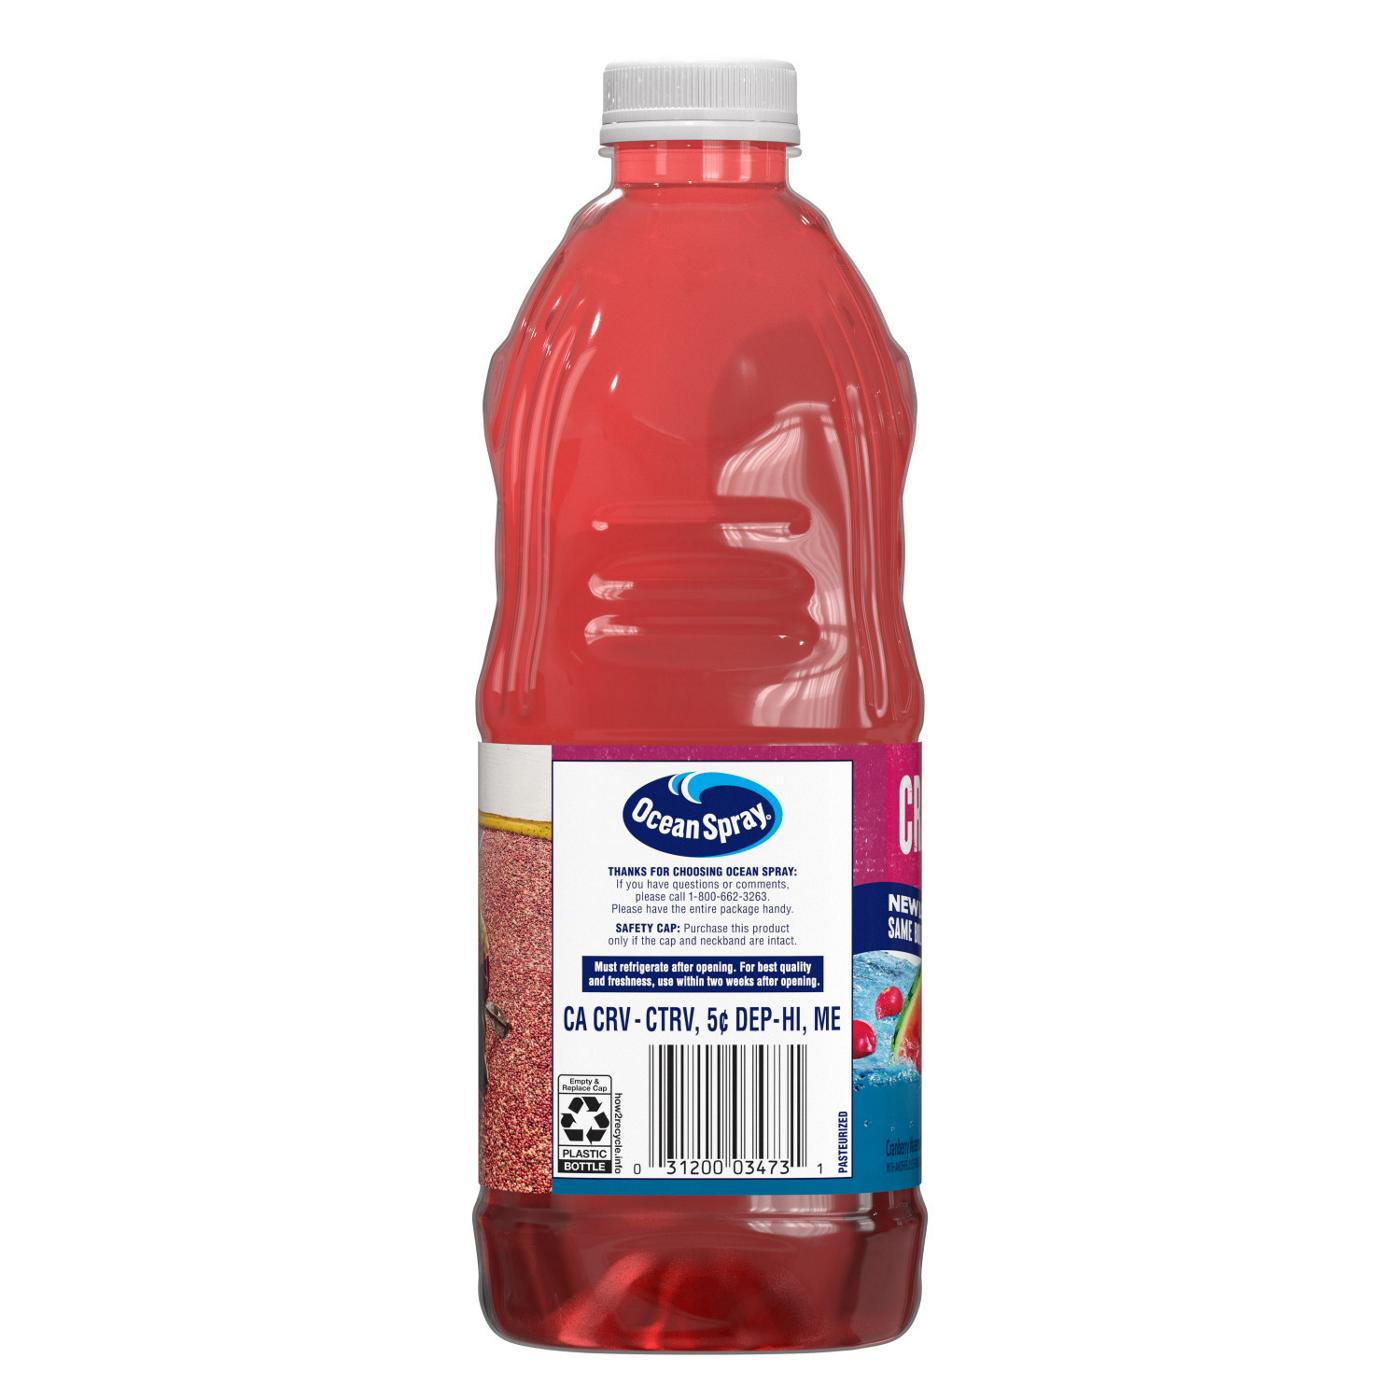 Ocean Spray Cran-Watermelon Juice Drink; image 2 of 6